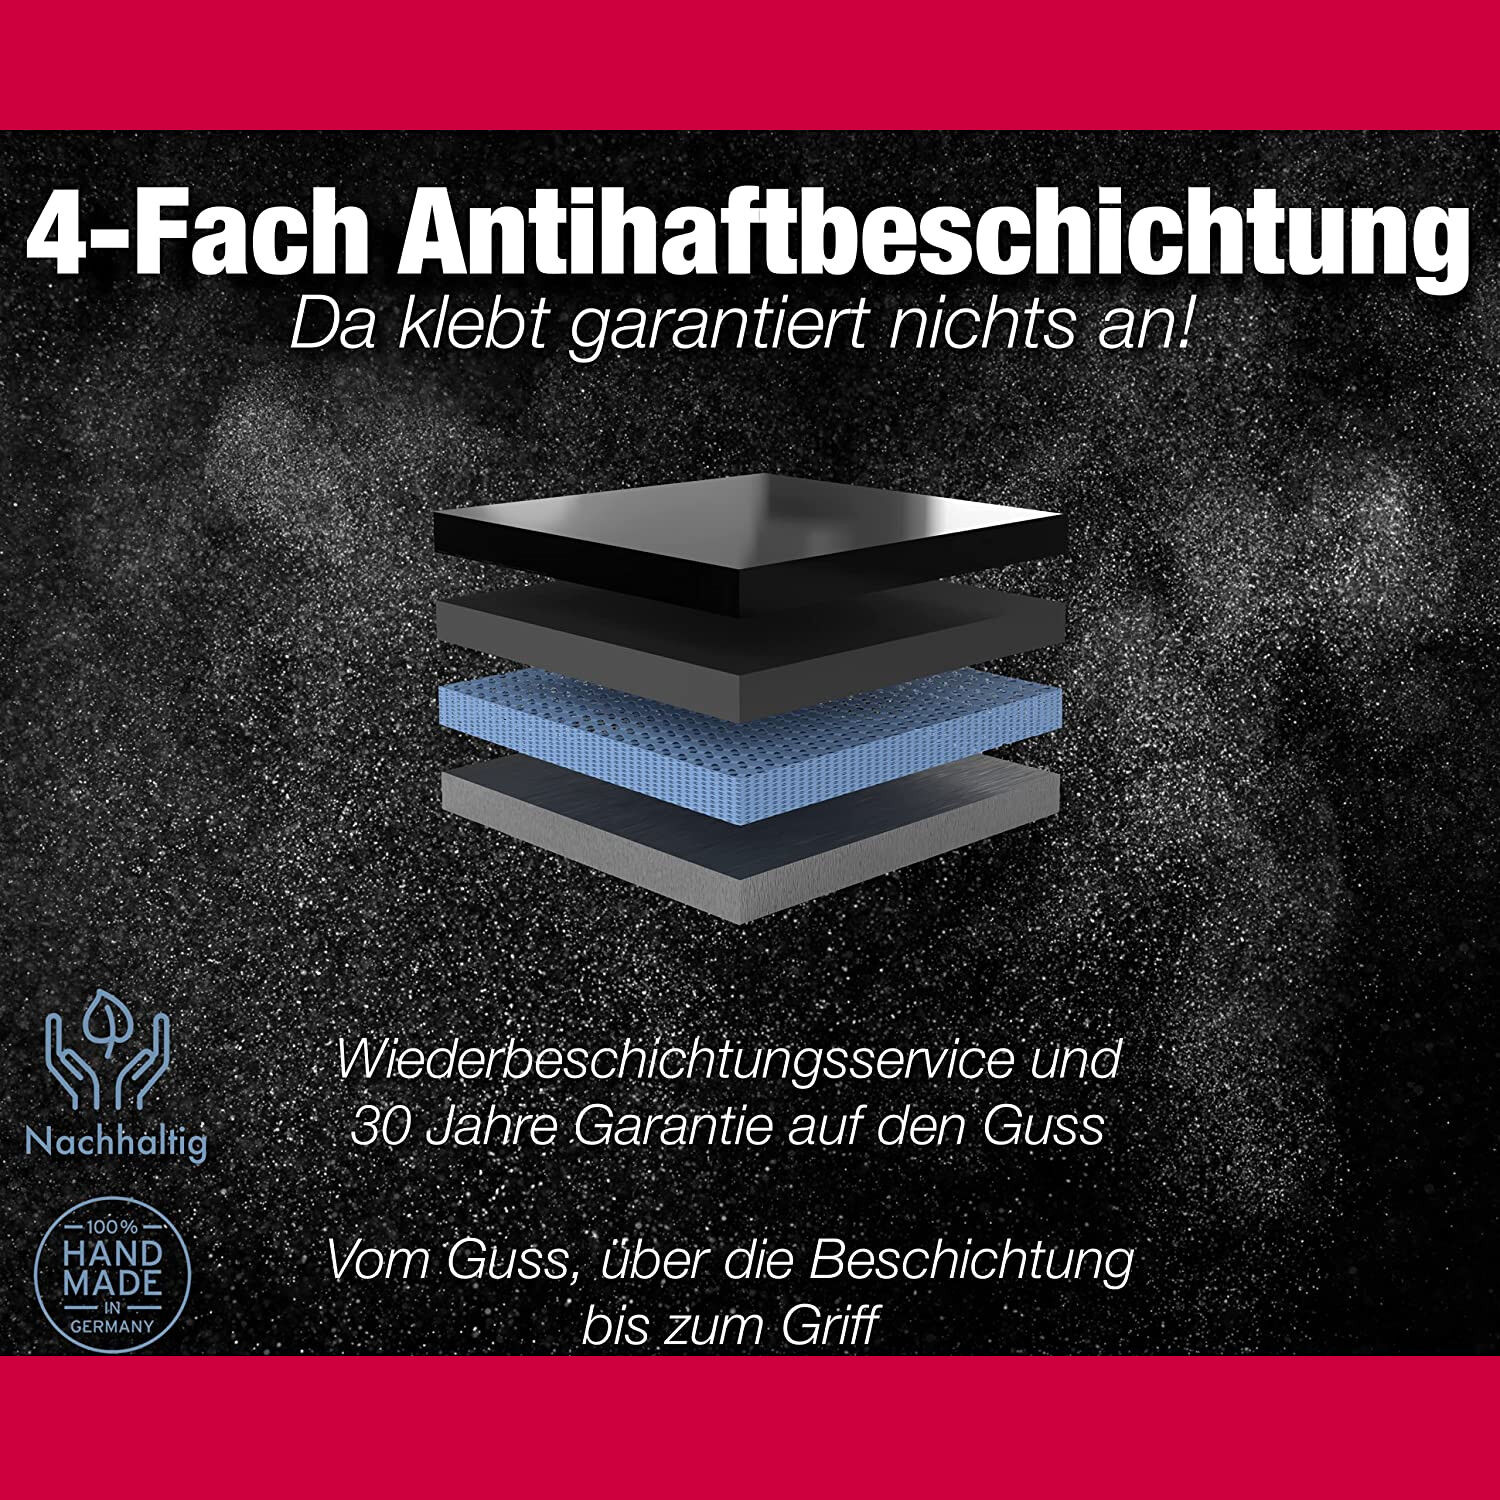 Ø 28cm Bratpfanne Aluguss Antihaftbeschichtet ~ 7cm Hochrand ~ Griff abnehmbar ~ Made in Germany